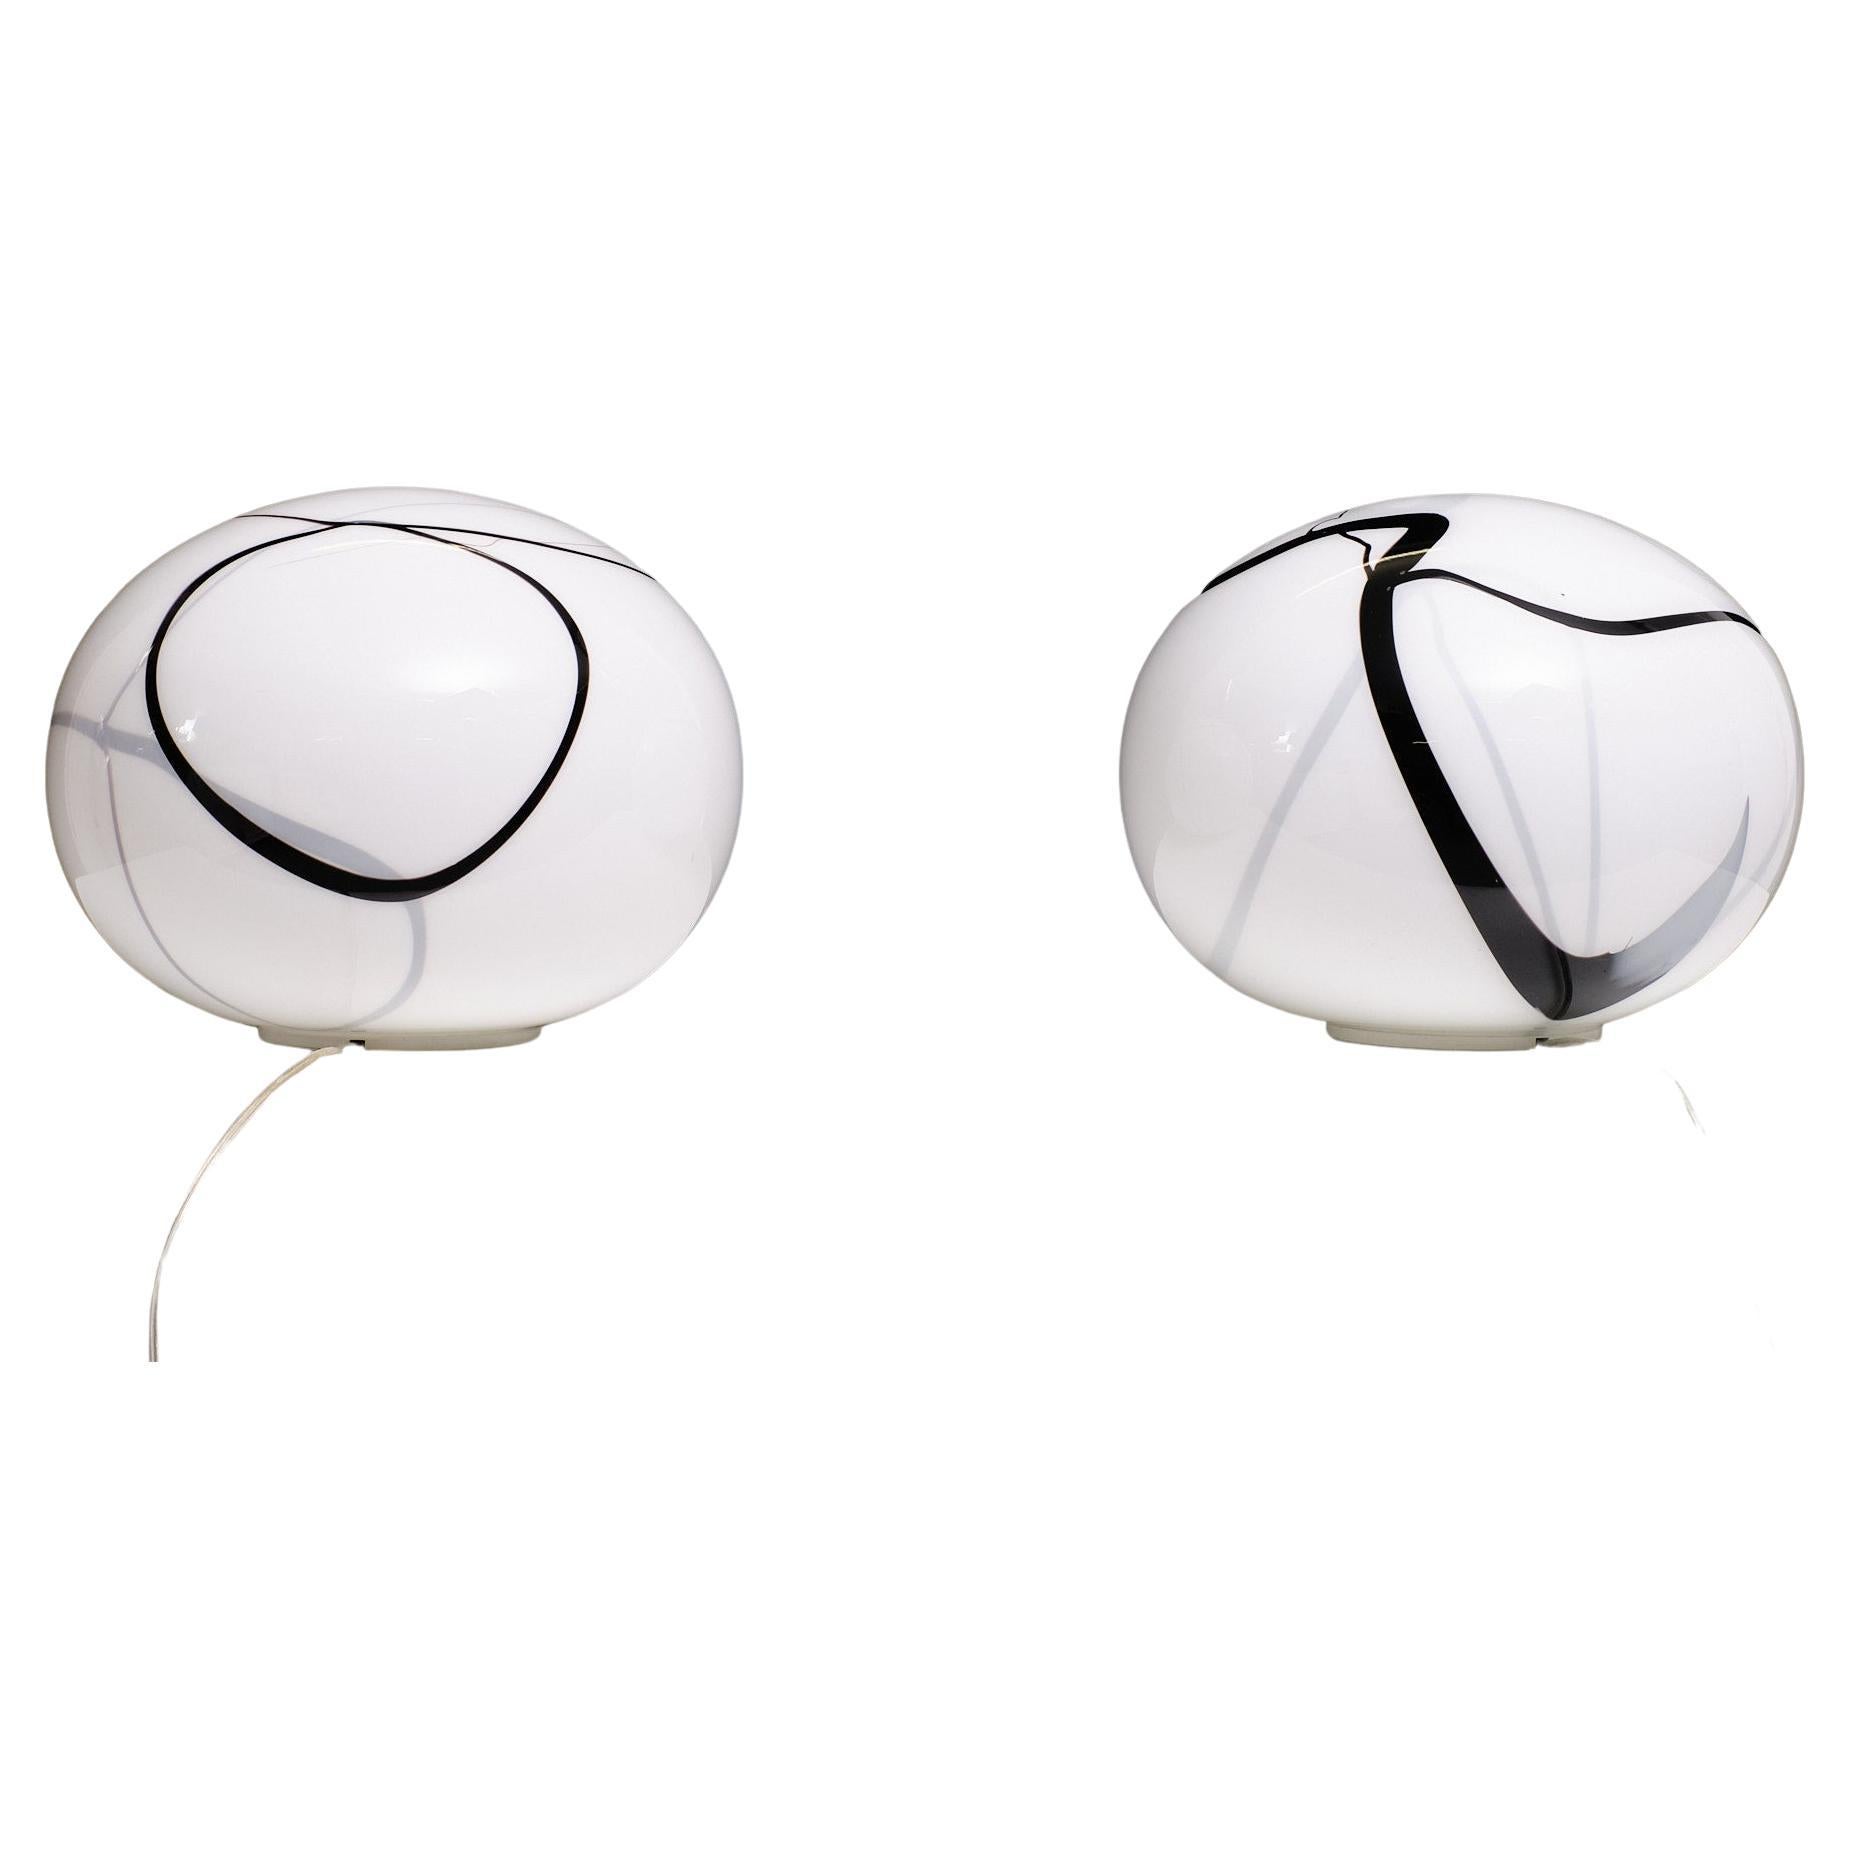 Zwei fantastische Zebra Globe Tischlampen . Handgeblasen und dekoriert. Hergestellt von
Zijlstra Tiel eine kleine Firma in Holland, nicht eine von diesen Tischlampen sind die gleichen. 
Seltener Satz . Je eine große E27-Glühbirne erforderlich.